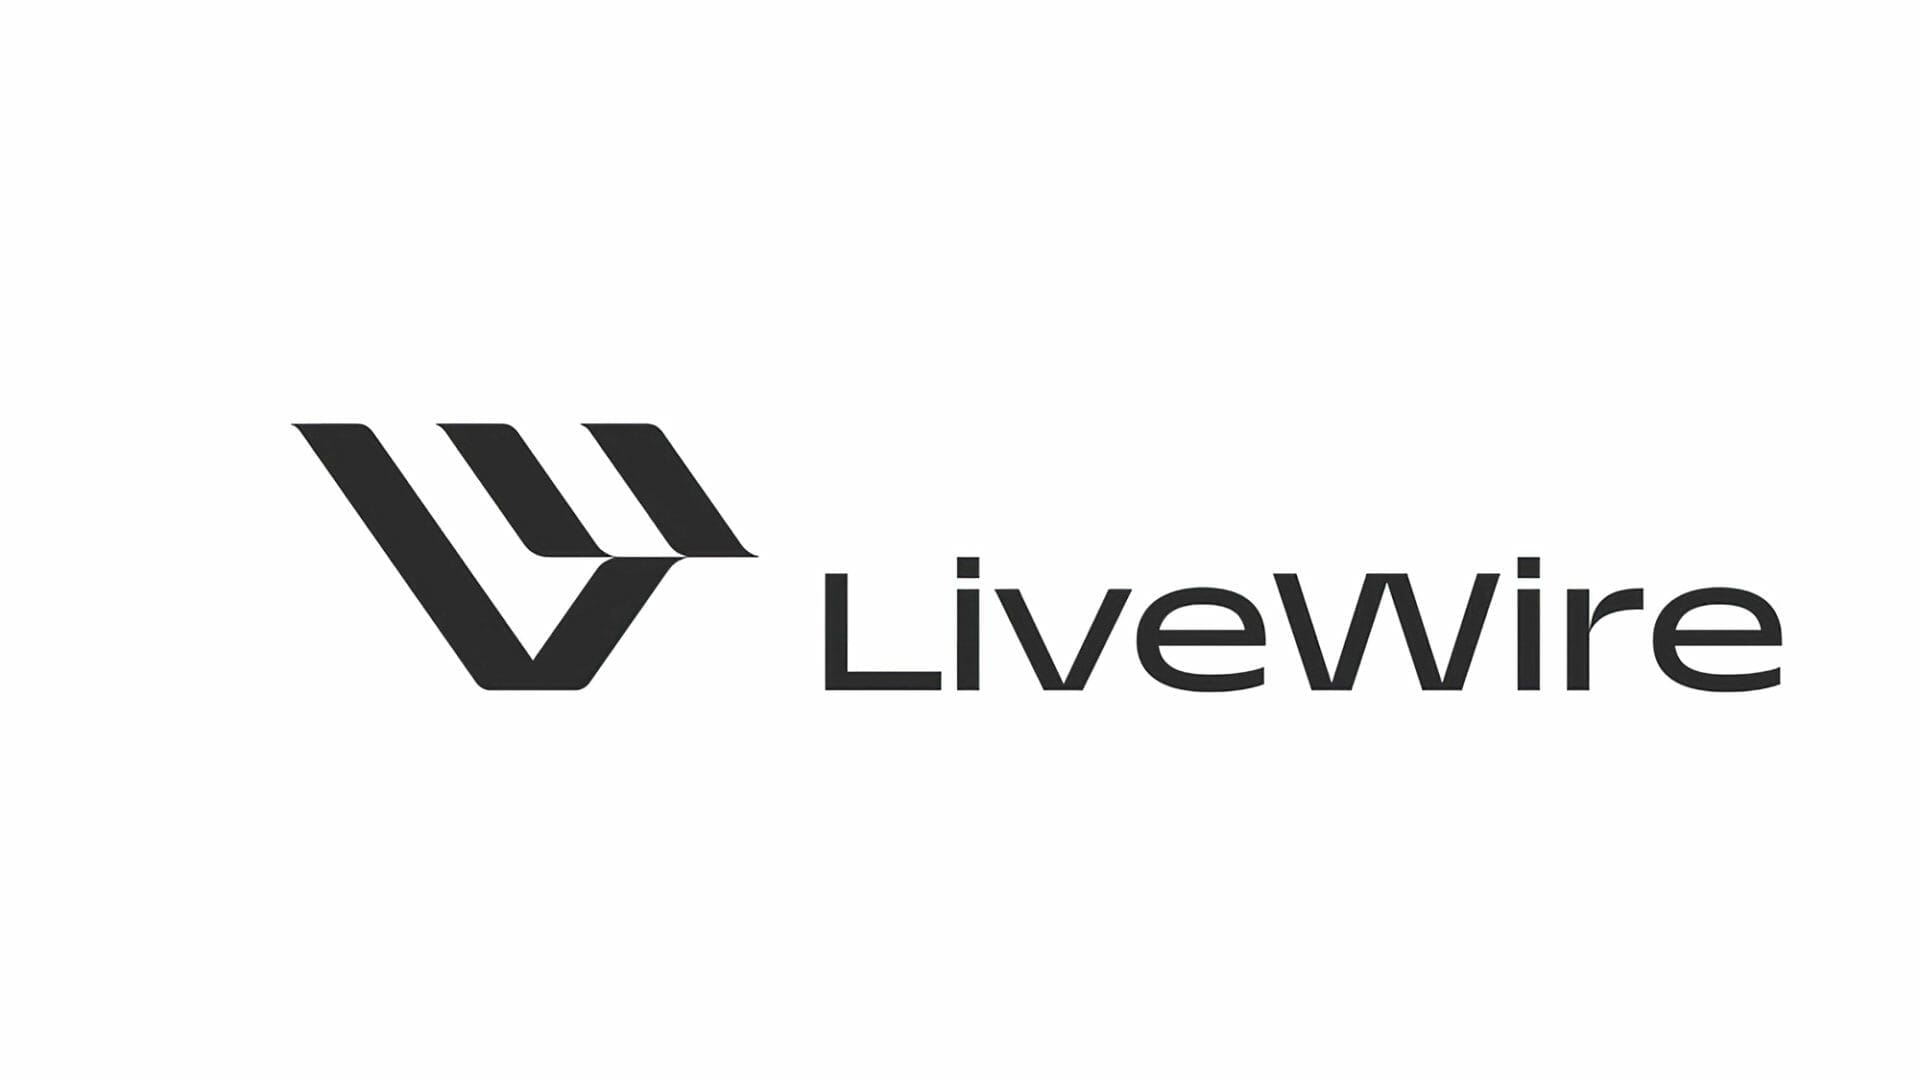 LiveWire wird eigene Marke
- auch in der MOTORRAD NACHRICHTEN APP